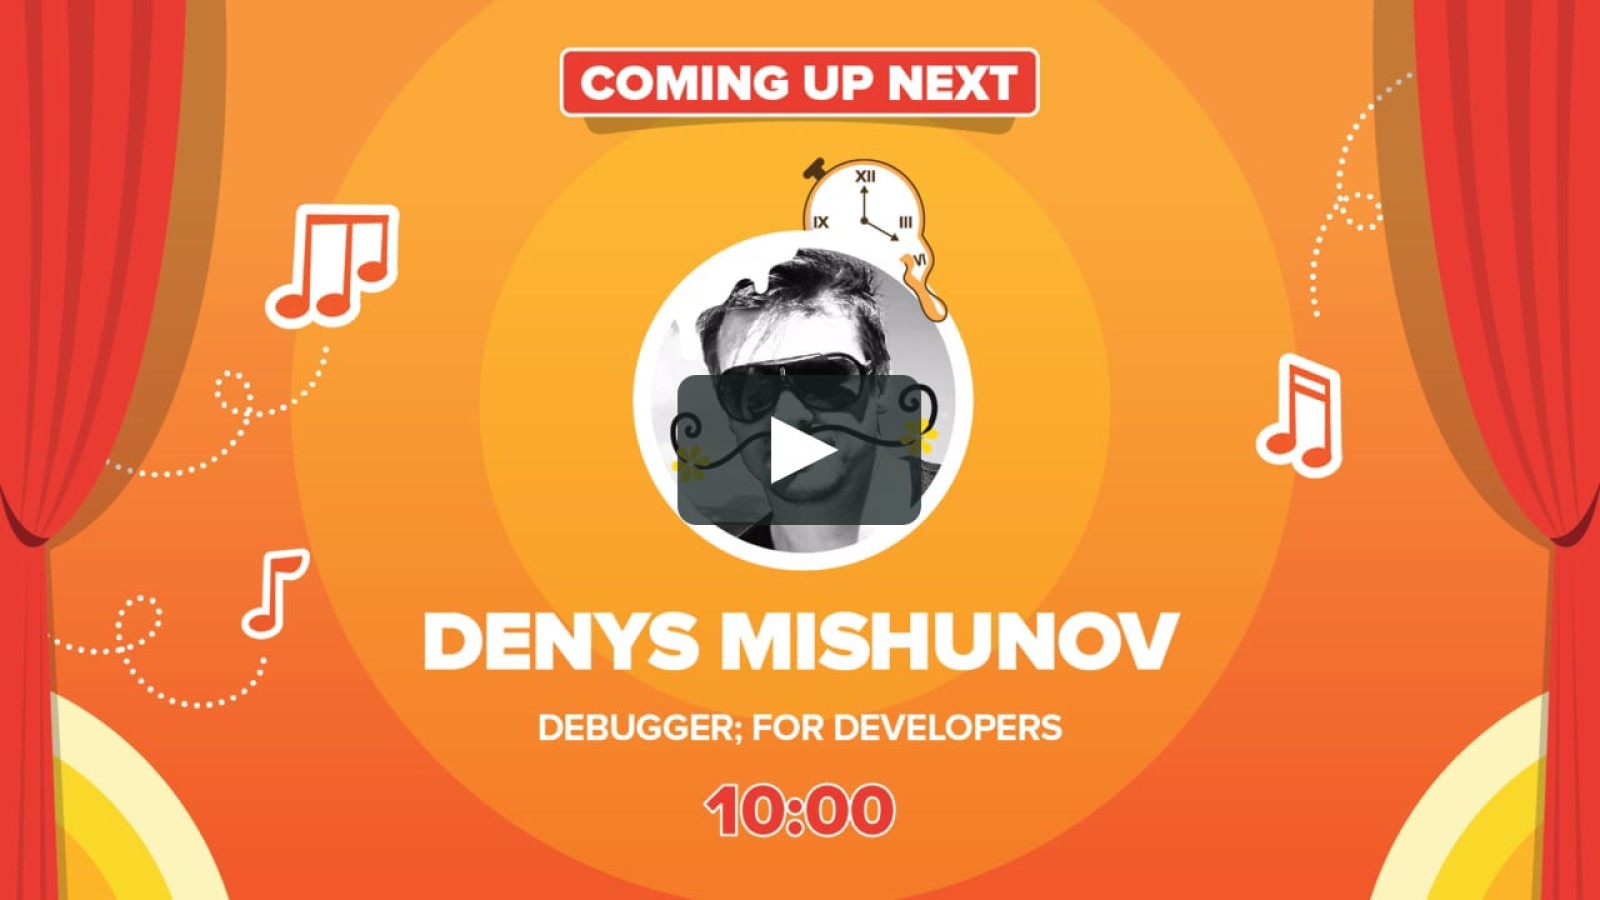 debugger; for developers